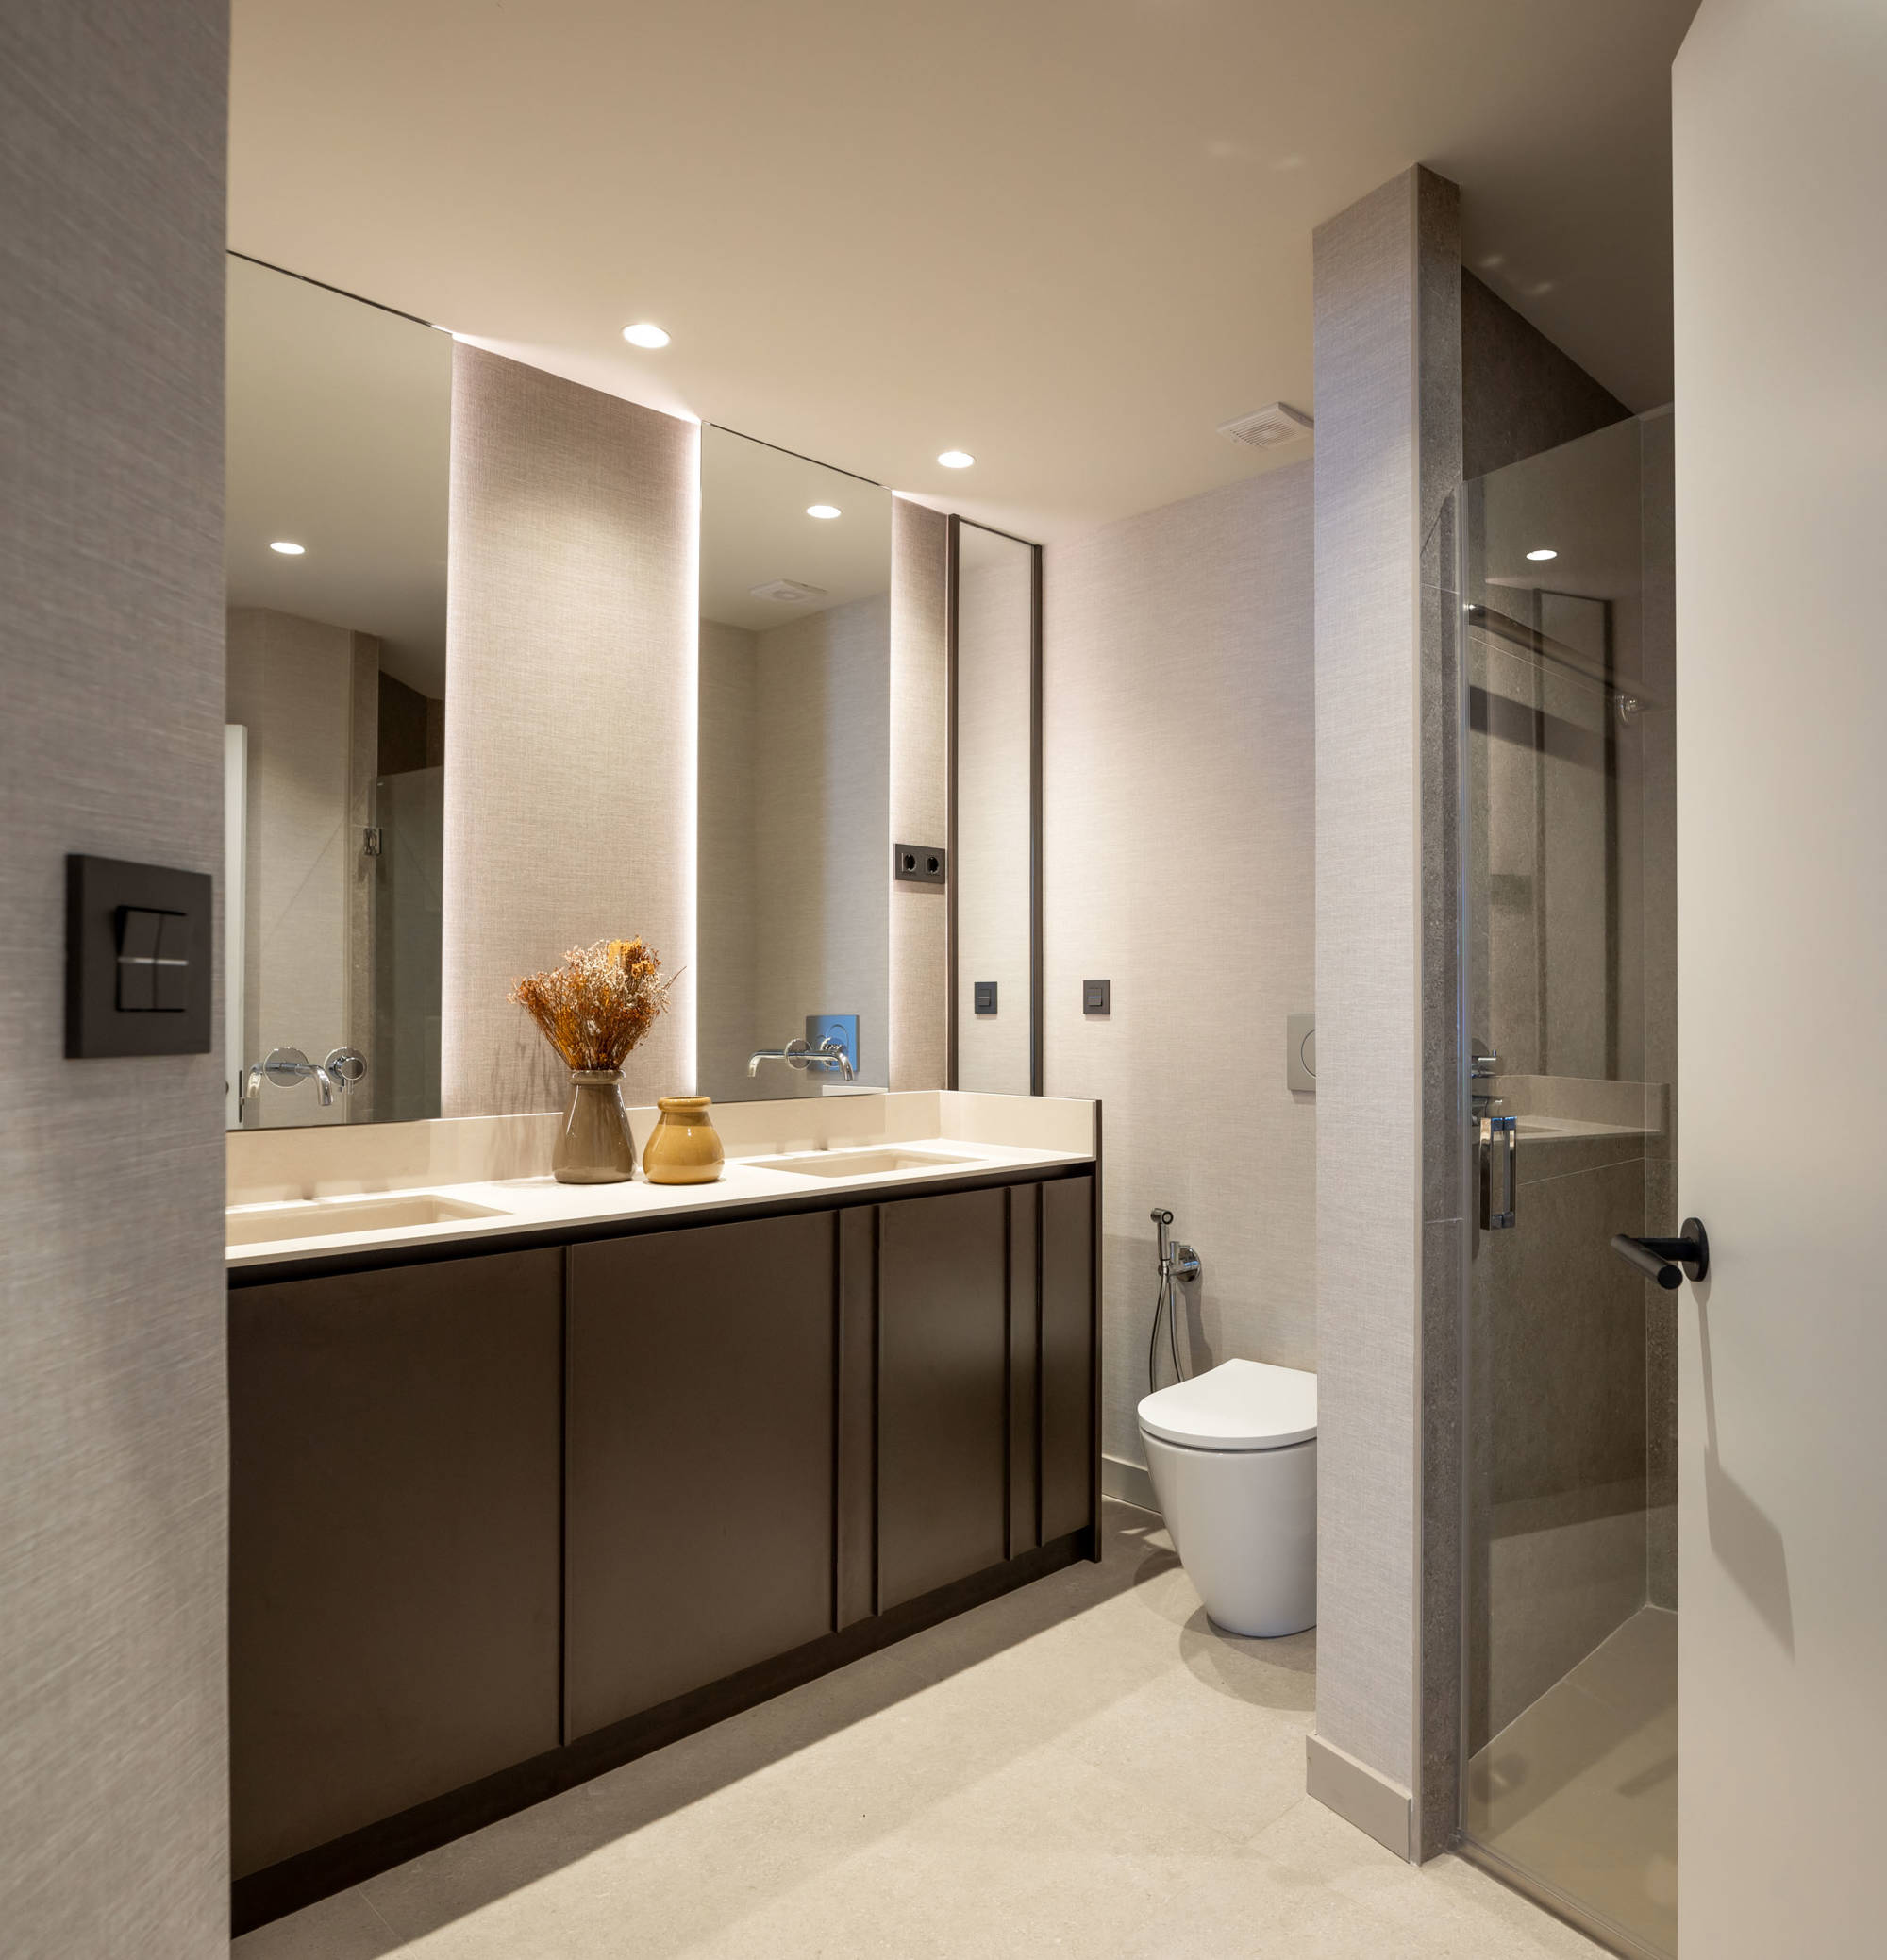 Baño con mueble bajolavabo con doble lavabo de madera, espejos iluminados y zona de ducha con mampara. 